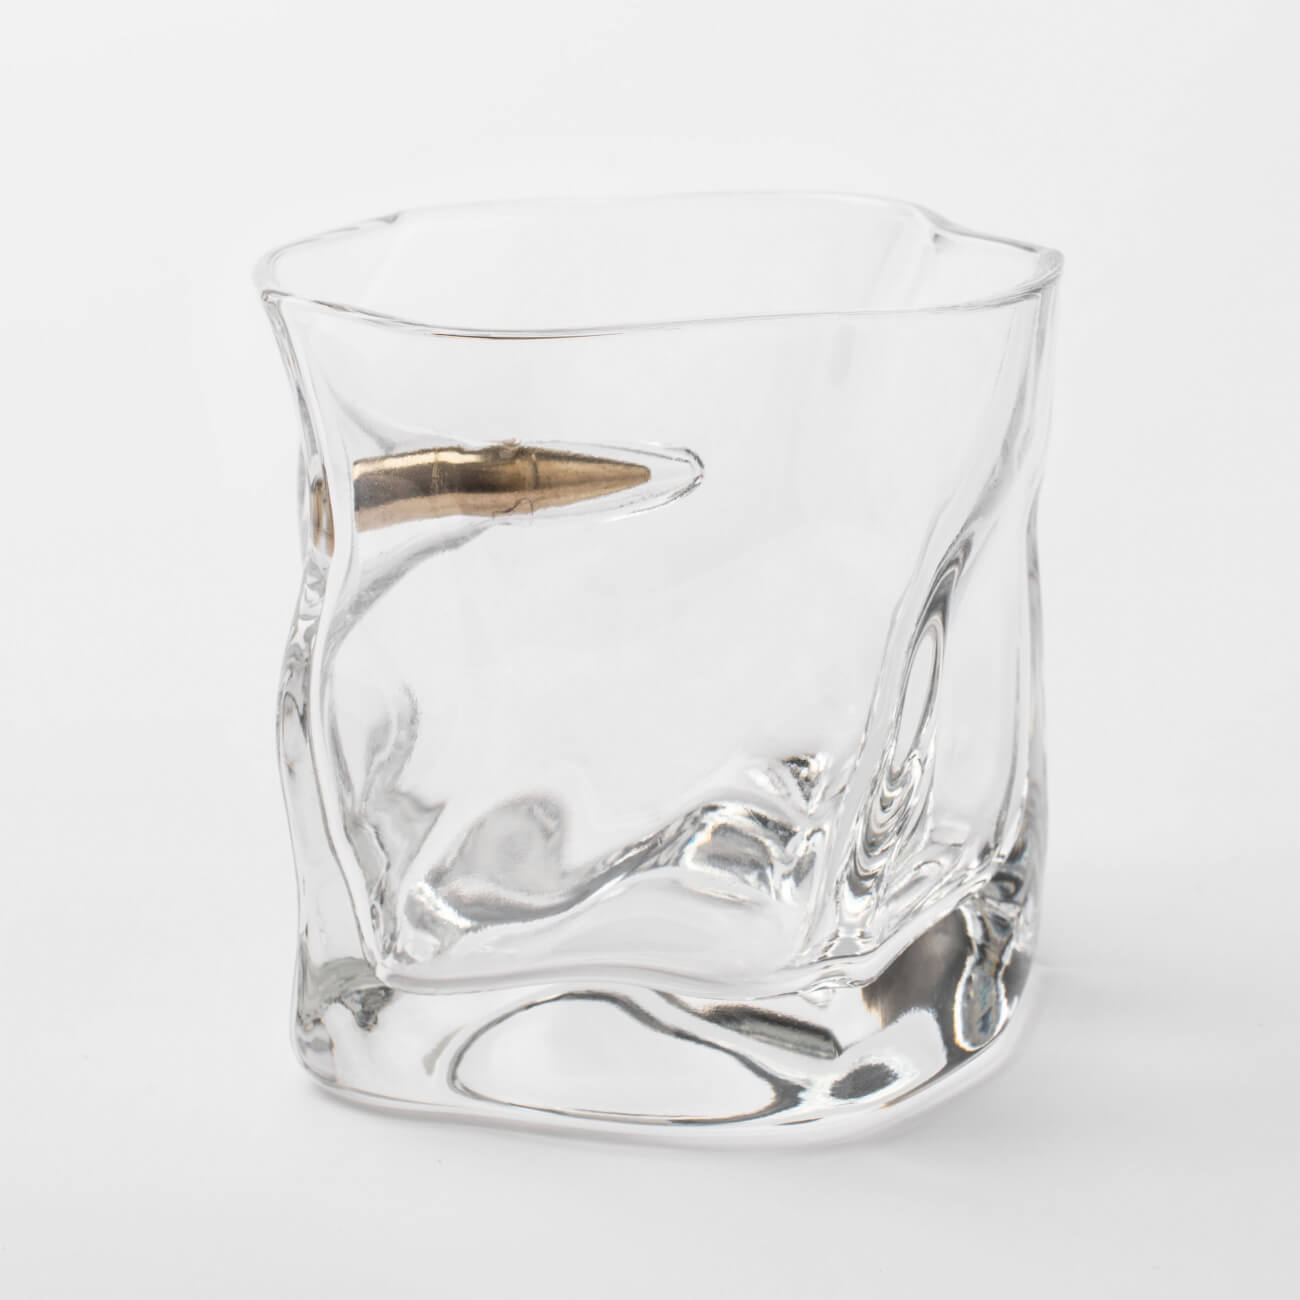 Стакан для виски, 8 см, 245 мл, стекло/металл, с декоративной пулей, Bullet стакан для виски 330 мл стекло 6 шт glasstar триумф n 620 4